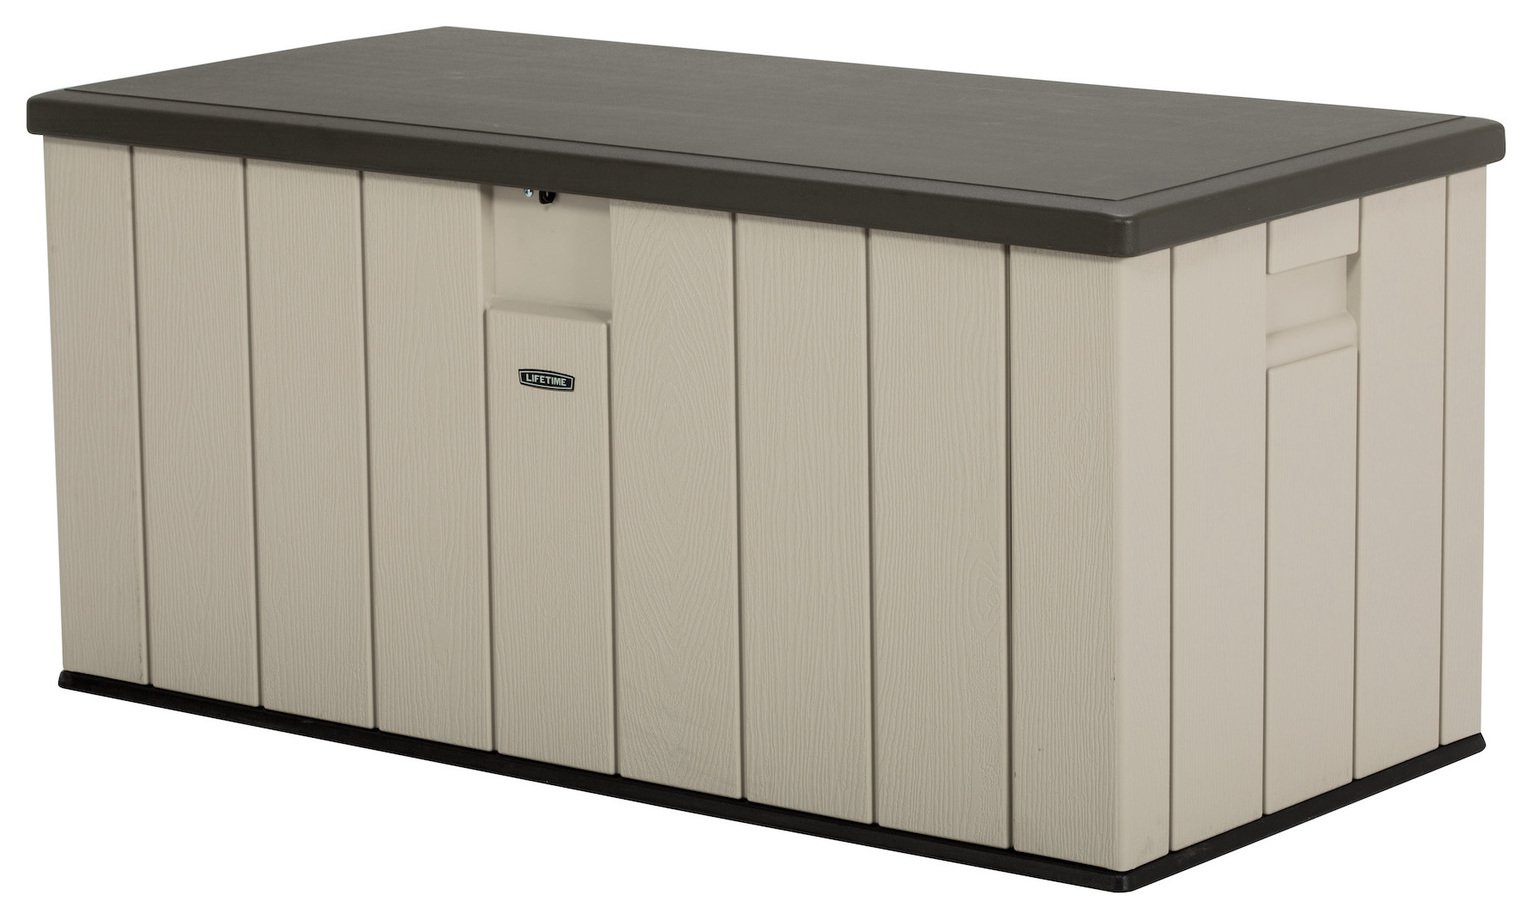 Lifetime 567.81L Plastic Outdoor Storage Deck Box